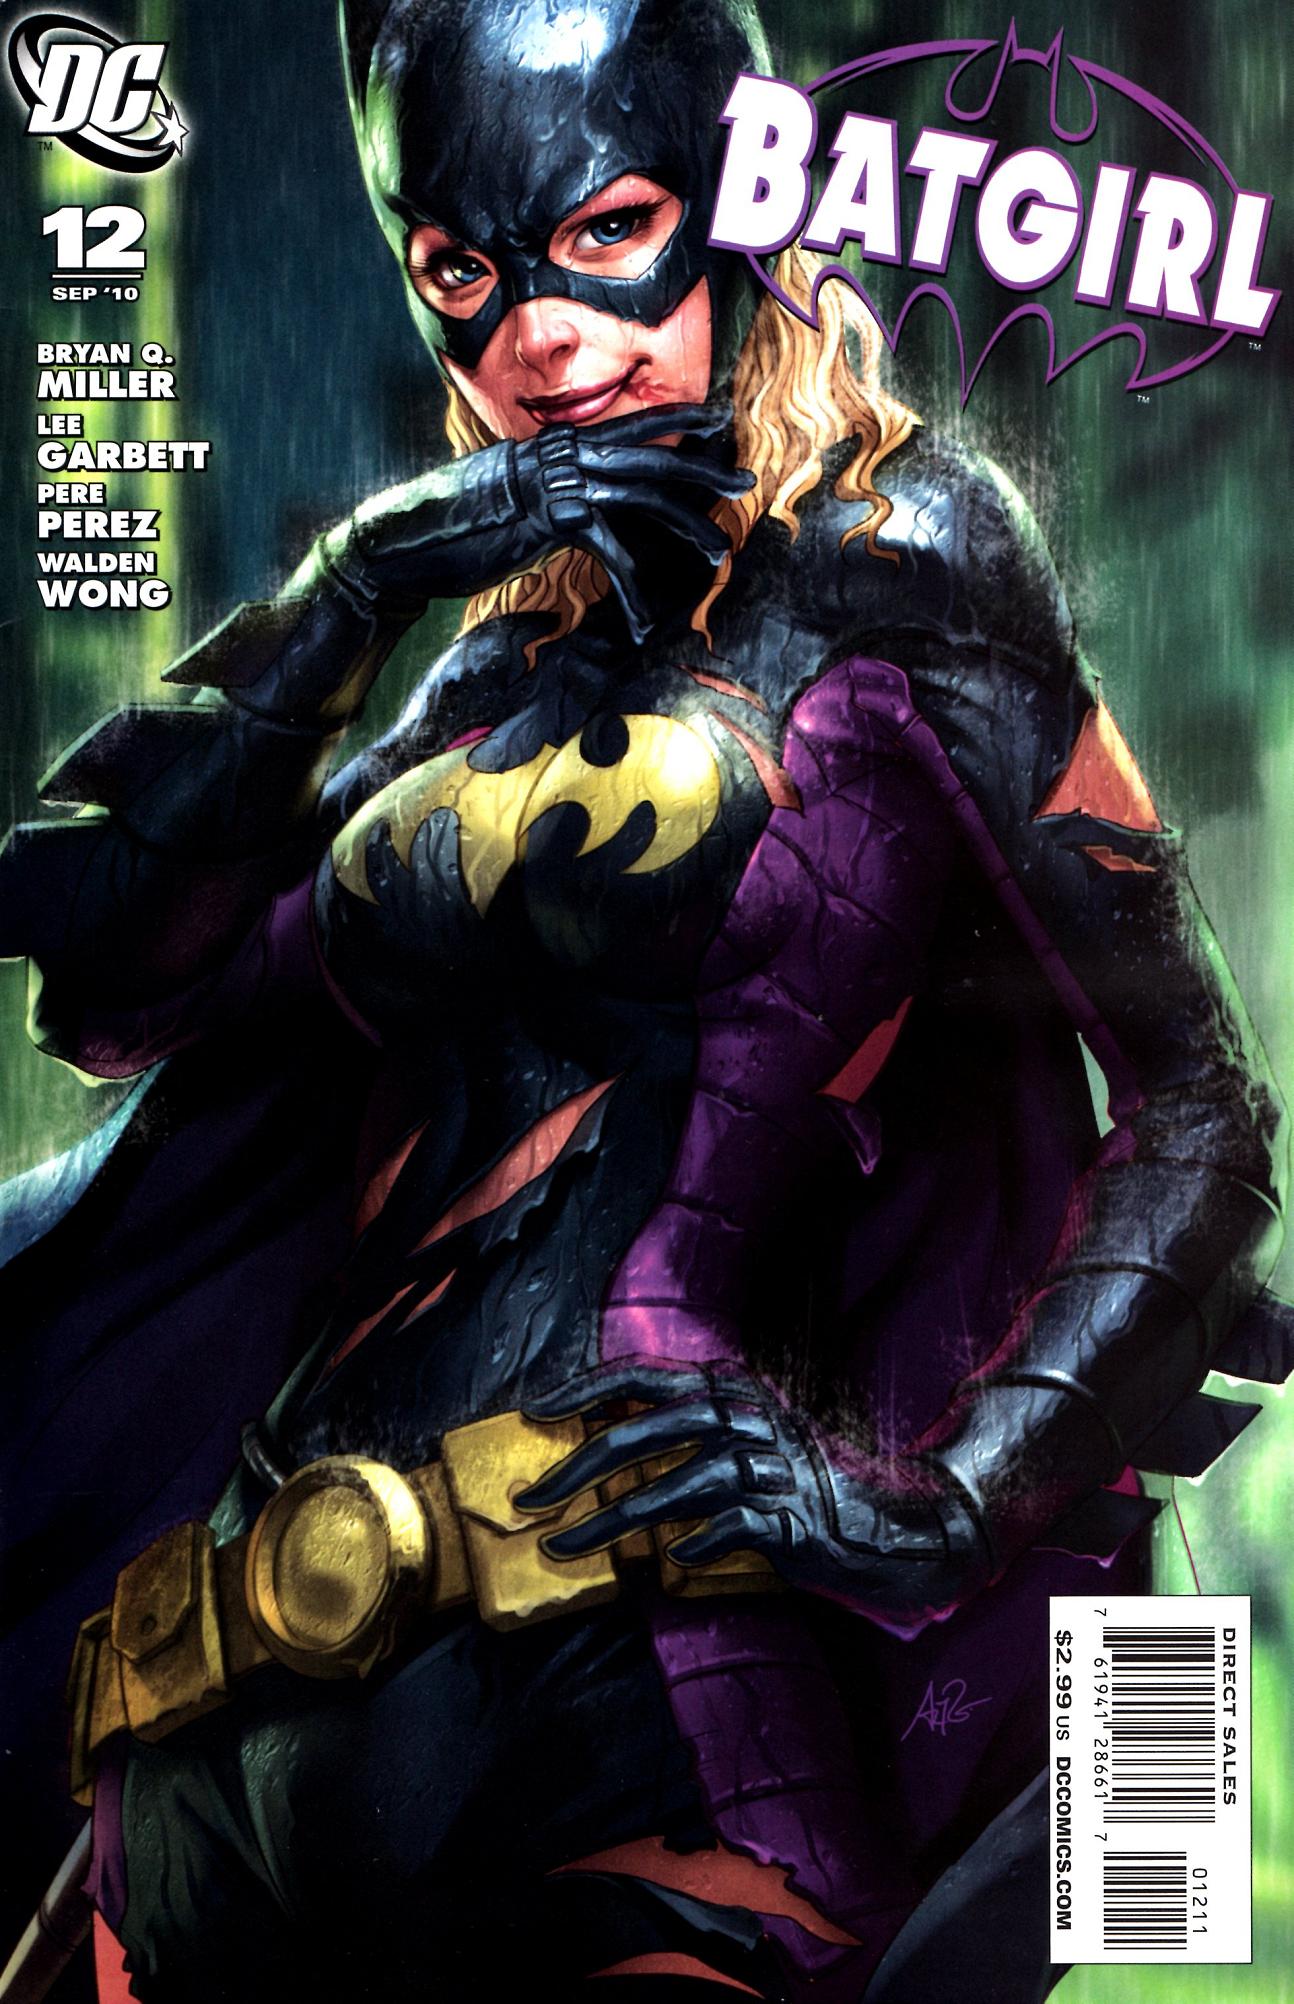 Batgirl Vol. 3 #12